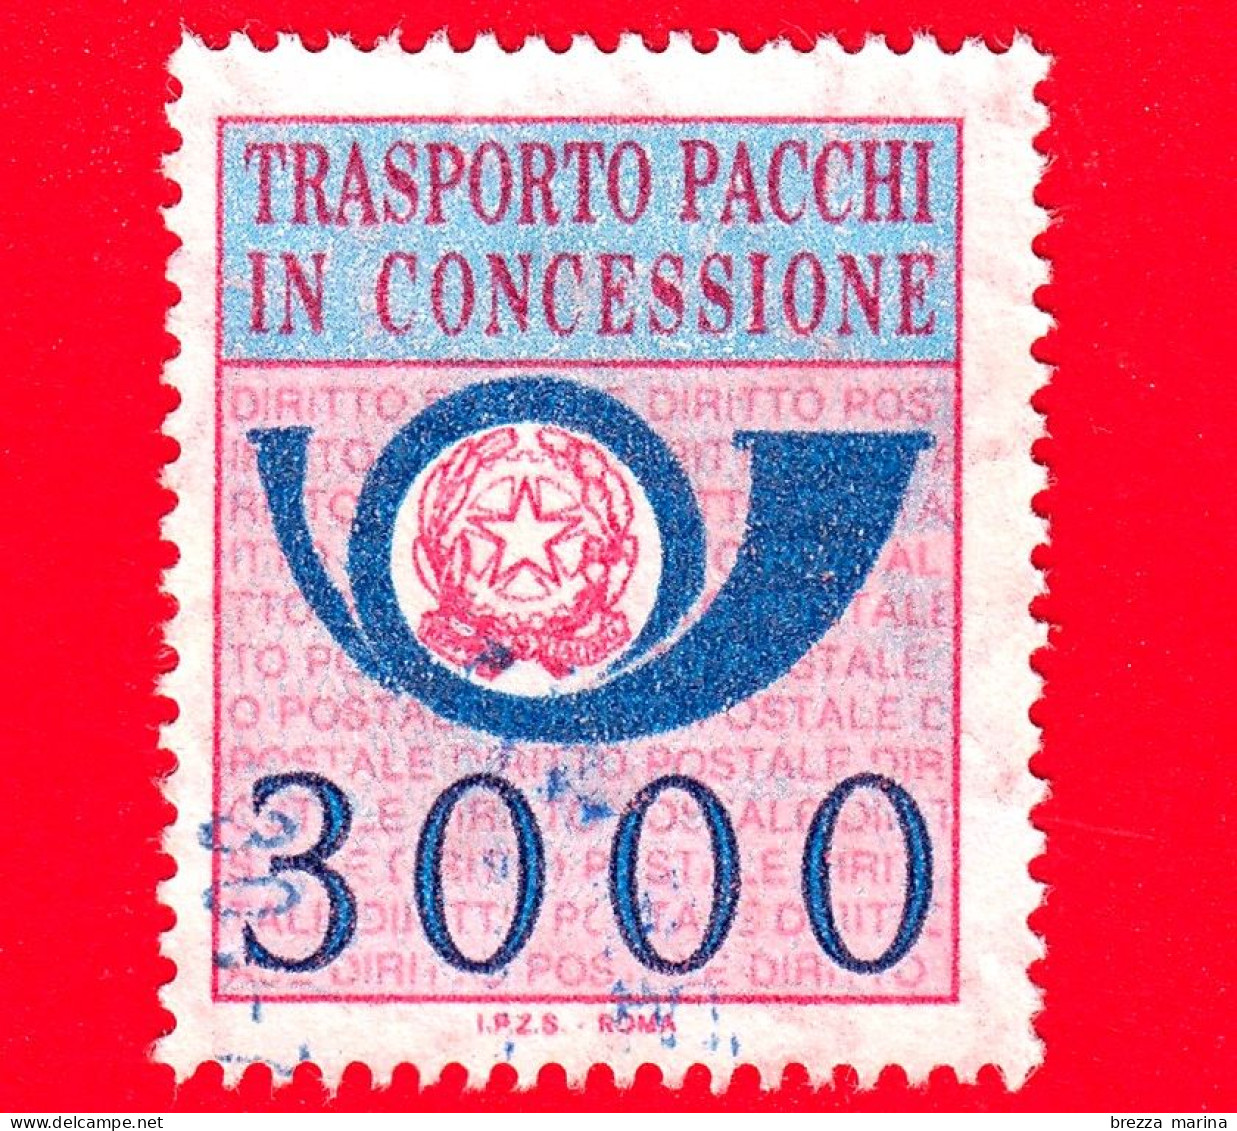 ITALIA - Usato - 1984 - Sezione Unica - Pacchi In Concessione - Corno Di Posta E Stemma Della Repubblica - 3000 - Colis-concession